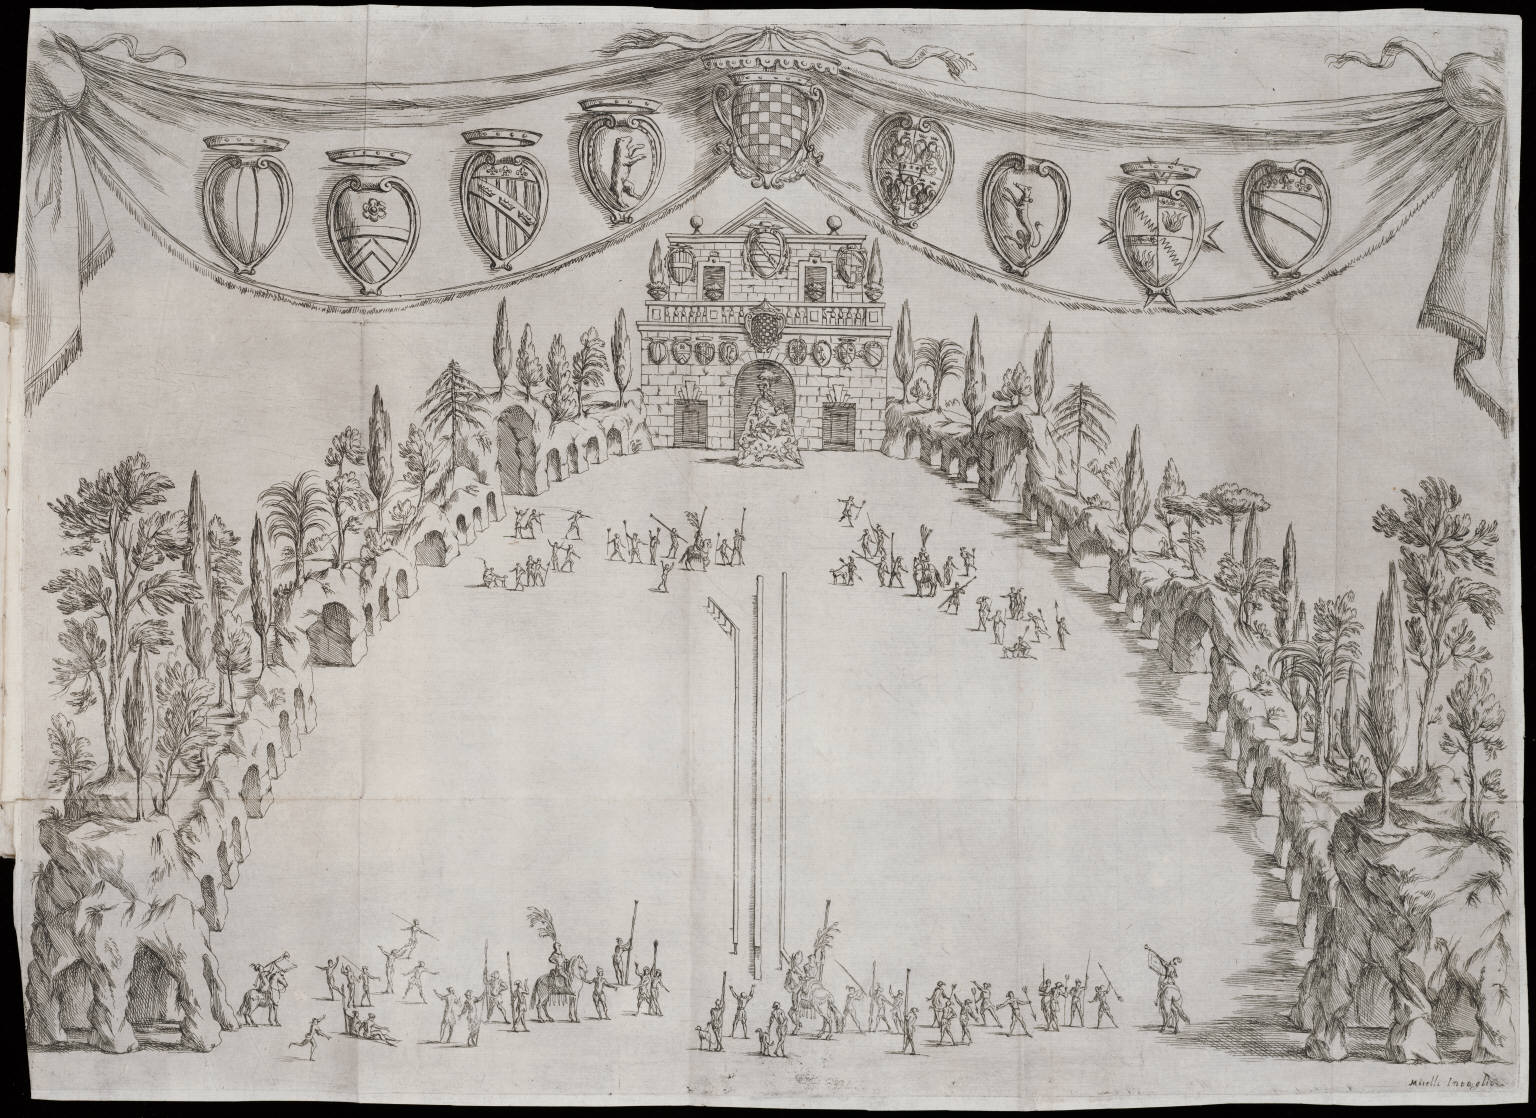 1667-La festa popolare della Porchetta fatta in Bologna.jpg